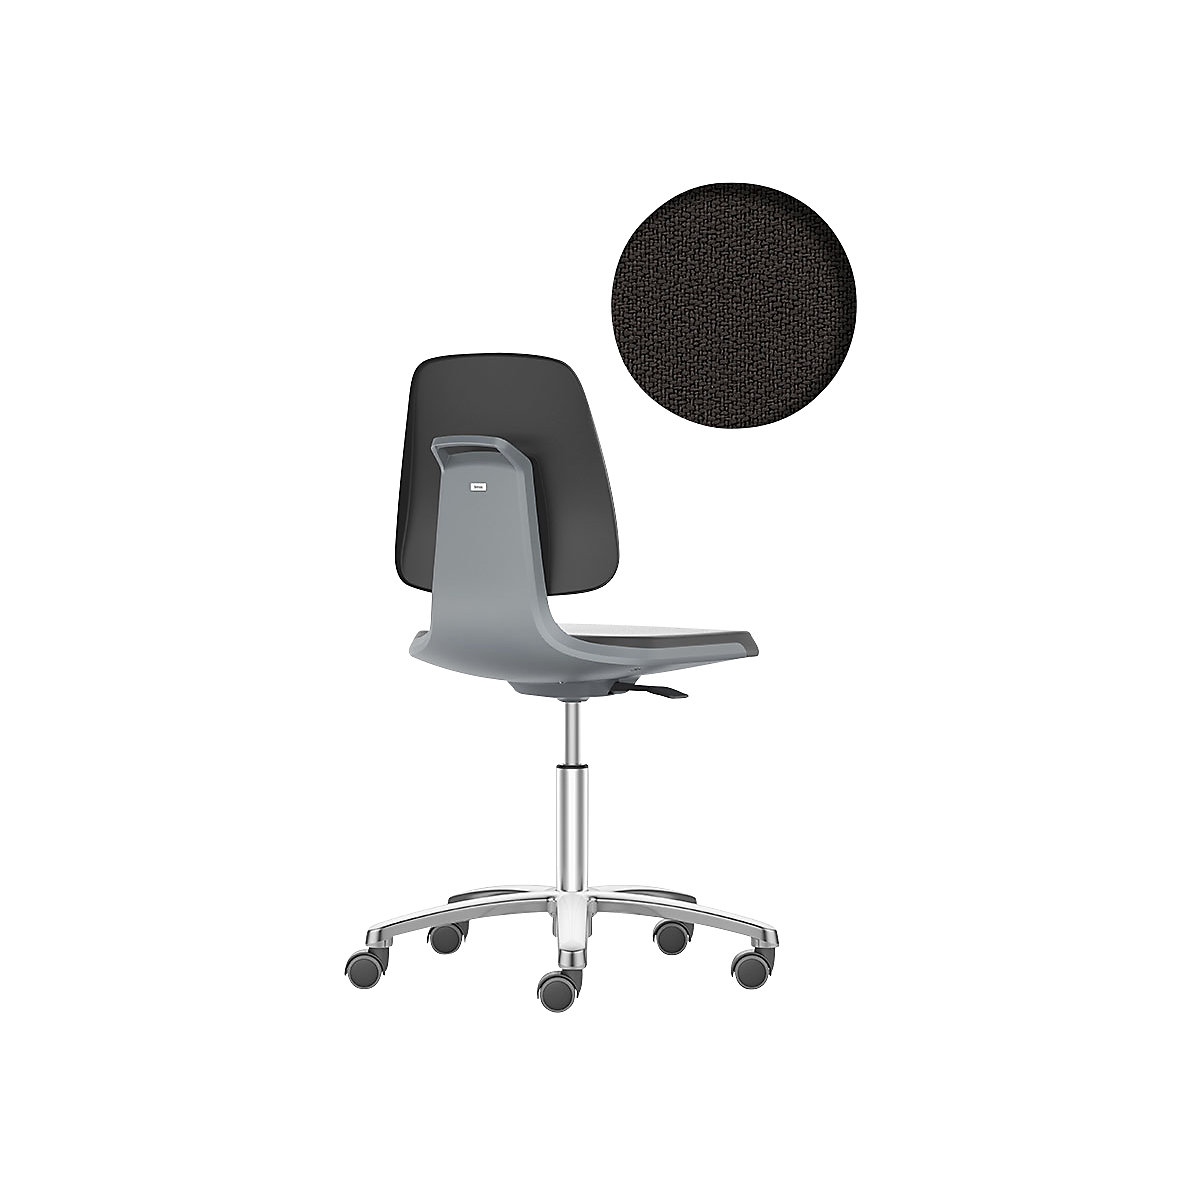 Pracovná otočná stolička LABSIT – bimos, päť nôh s kolieskami, sedadlo s látkovým poťahom, antracitová-21